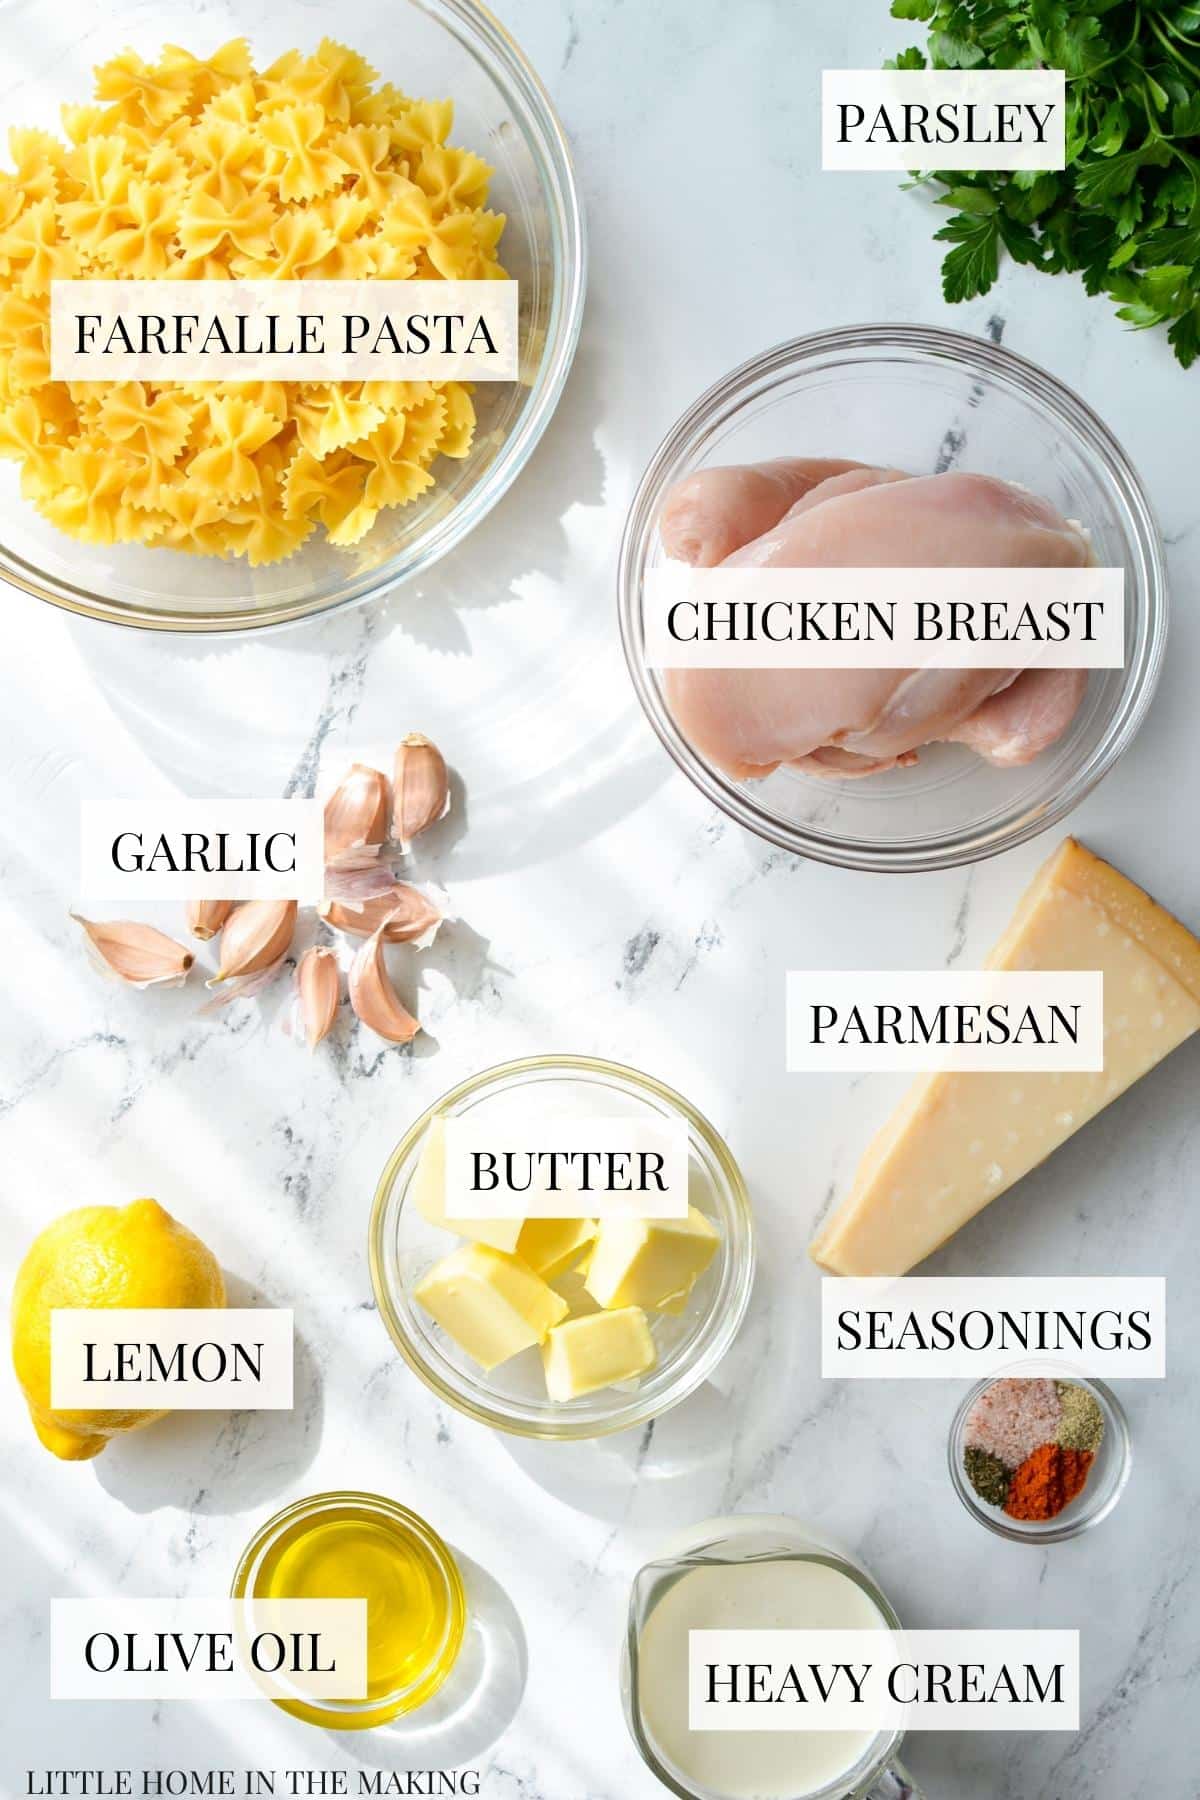 The ingredients needed to make lemon pasta: parmesan, chicken, butter, heavy cream, garlic, etc.